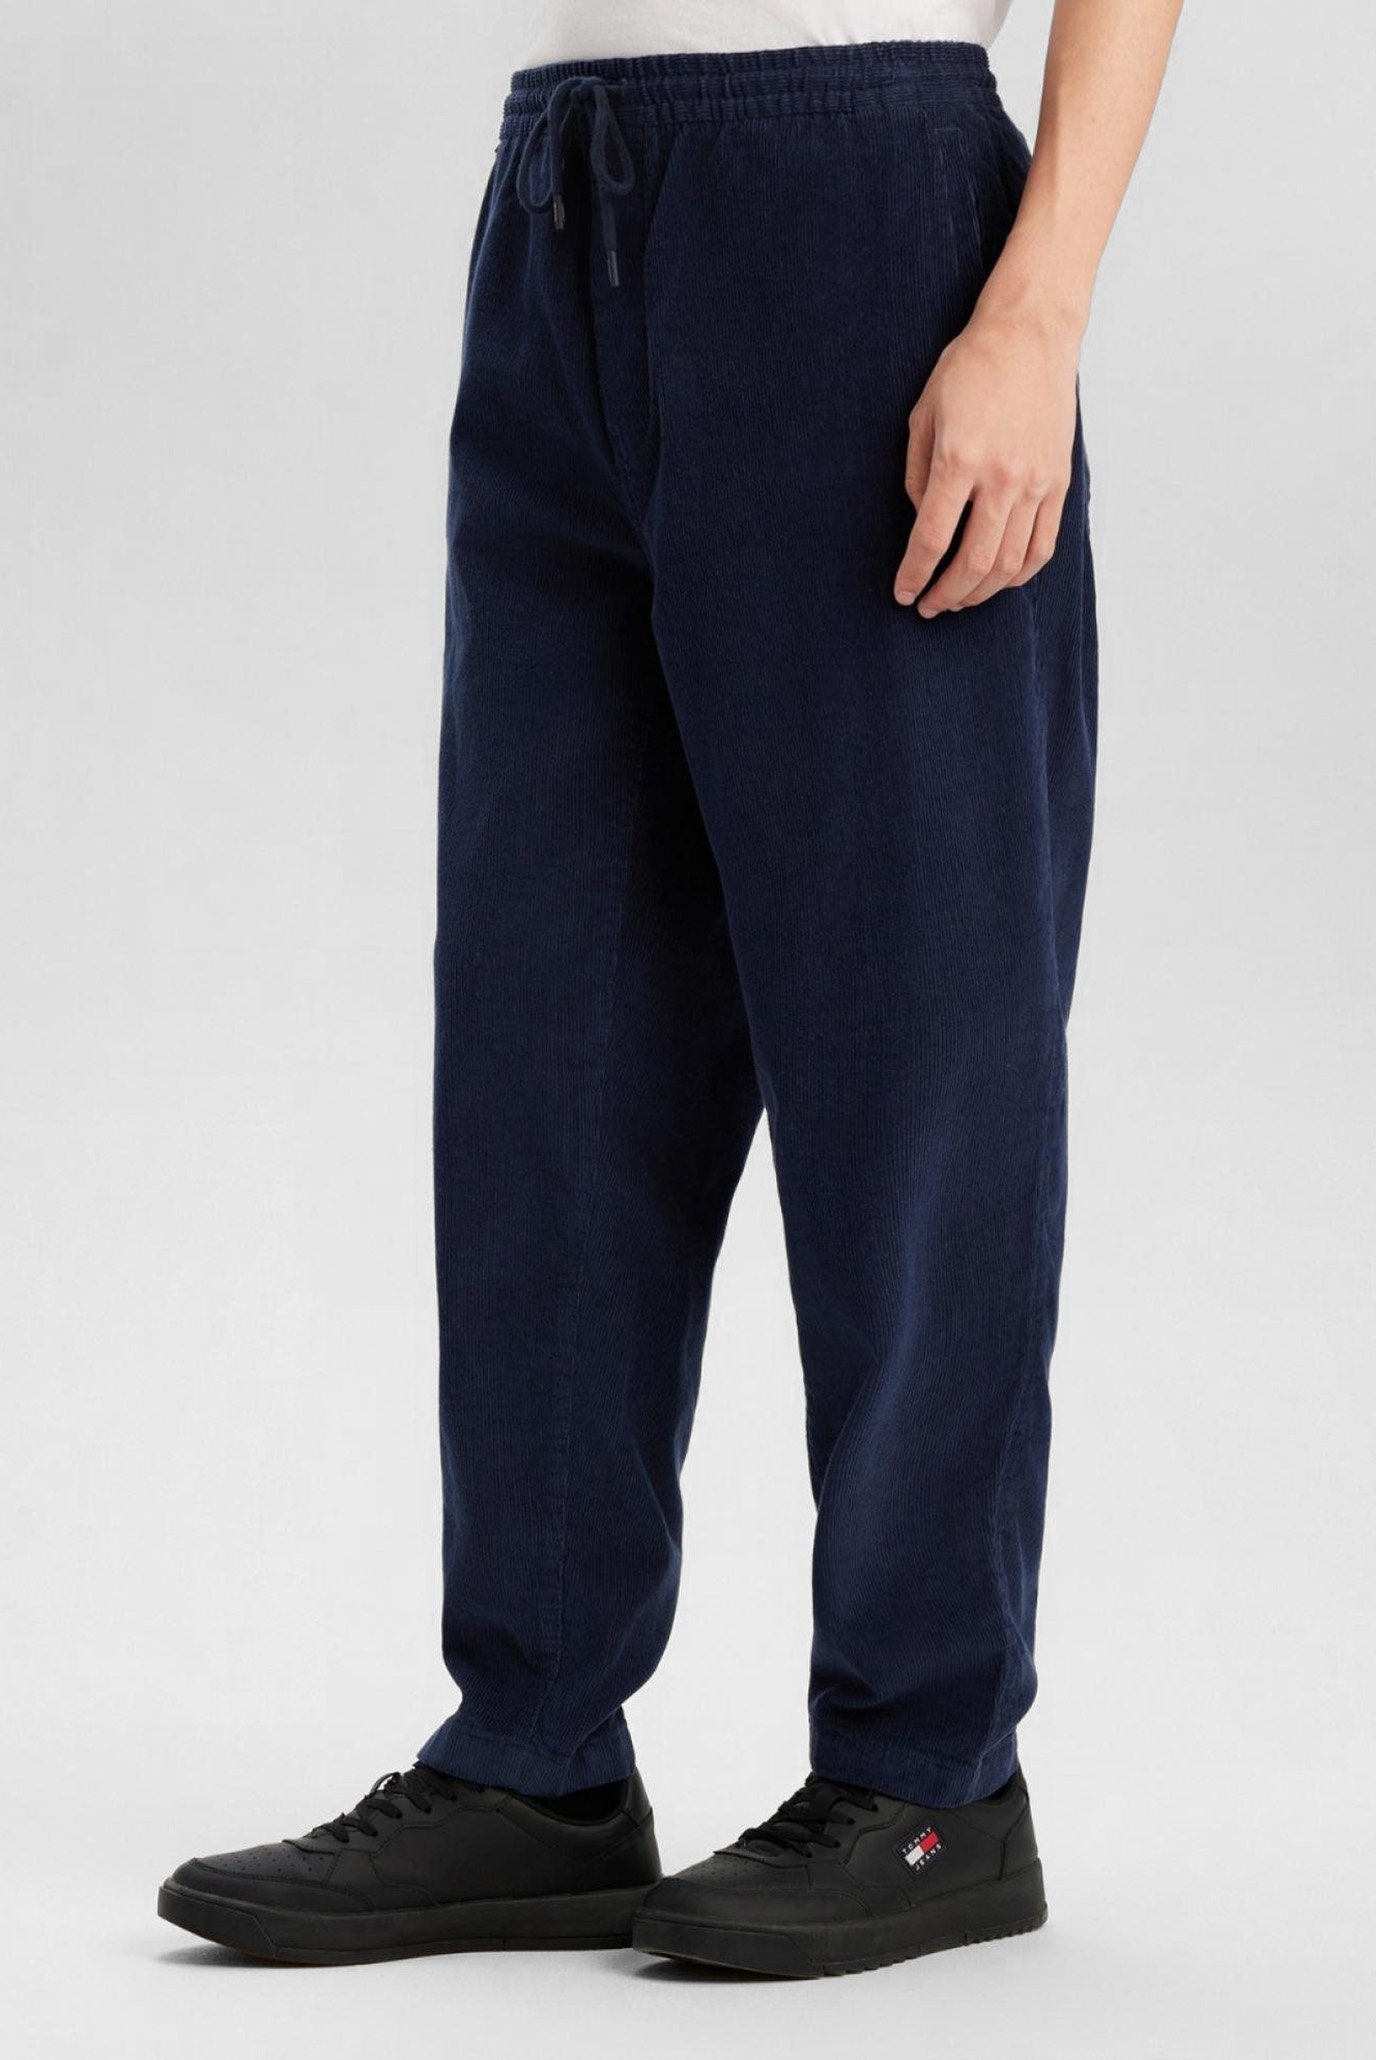 Чоловічі темно-сині вельветові брюки TJM CORDUROY 1